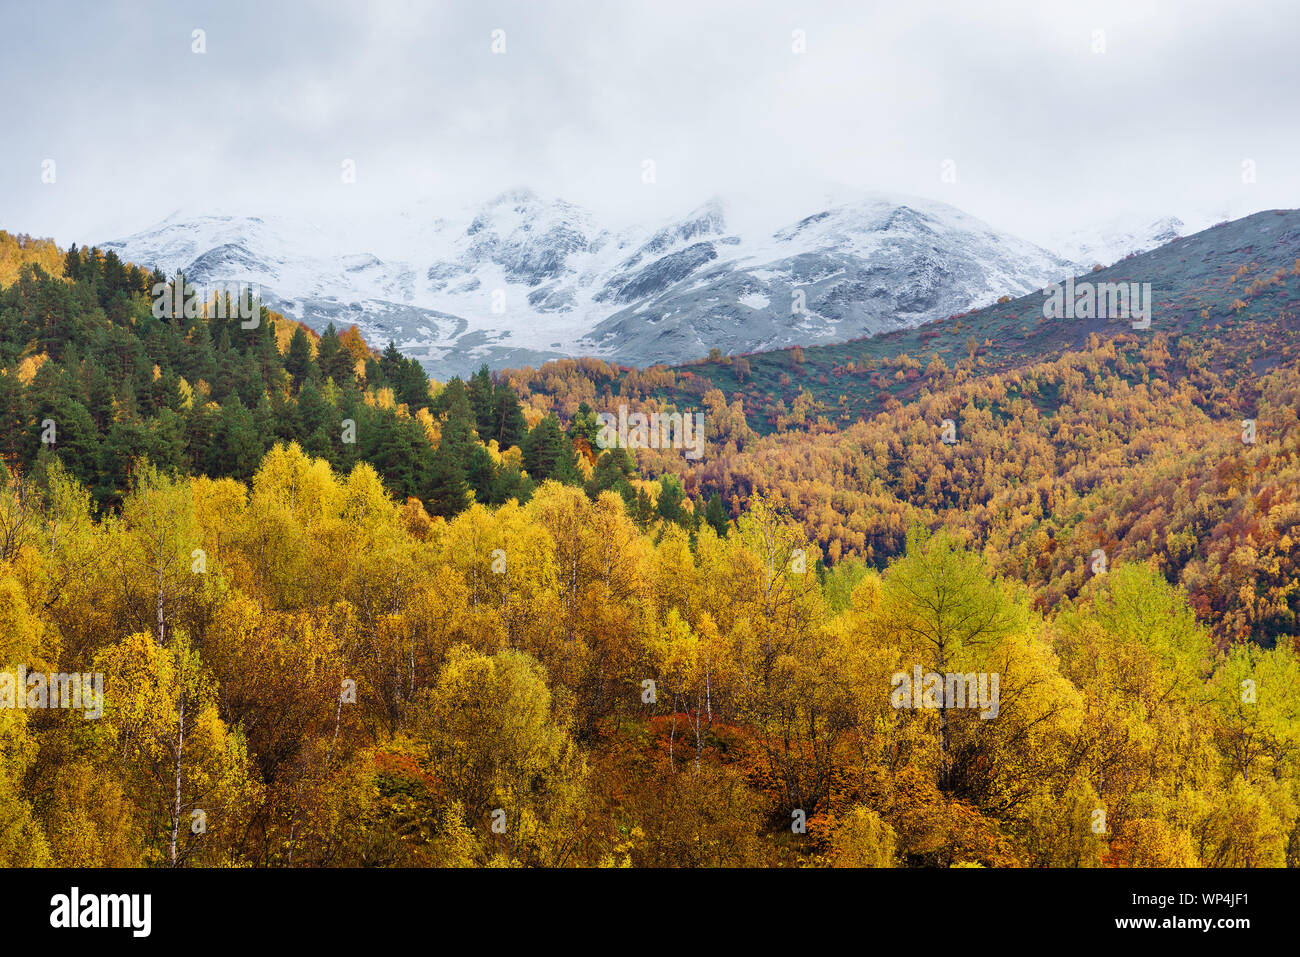 Hermoso bosque de abedules en las laderas de las montañas. Paisaje otoñal con árboles amarillos y picos con nieve. Foto de stock